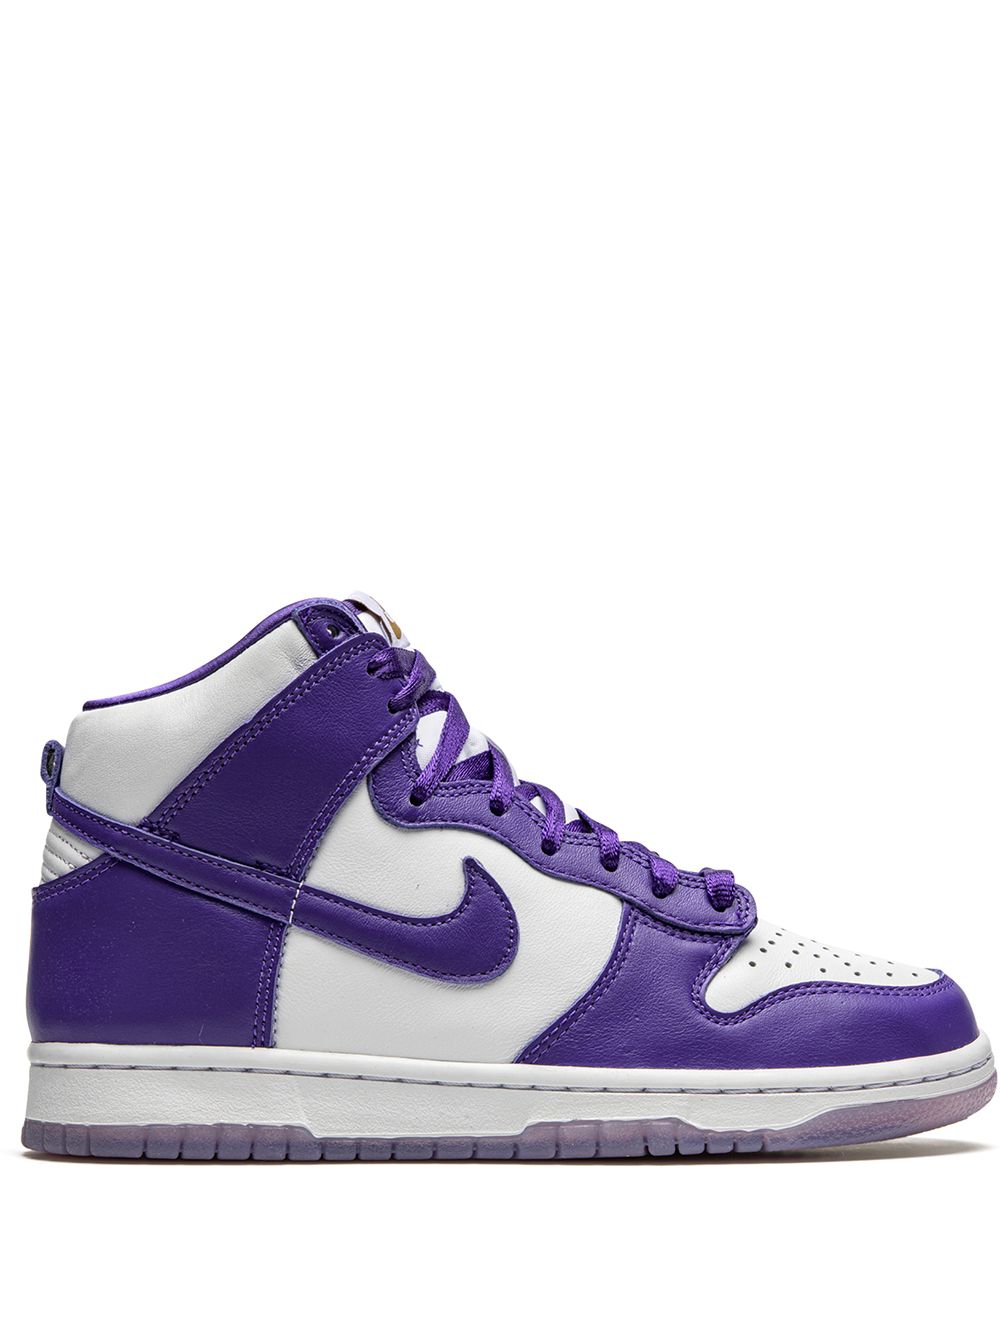 Image 1 of Nike Dunk High "Varsity Purple" sneakers